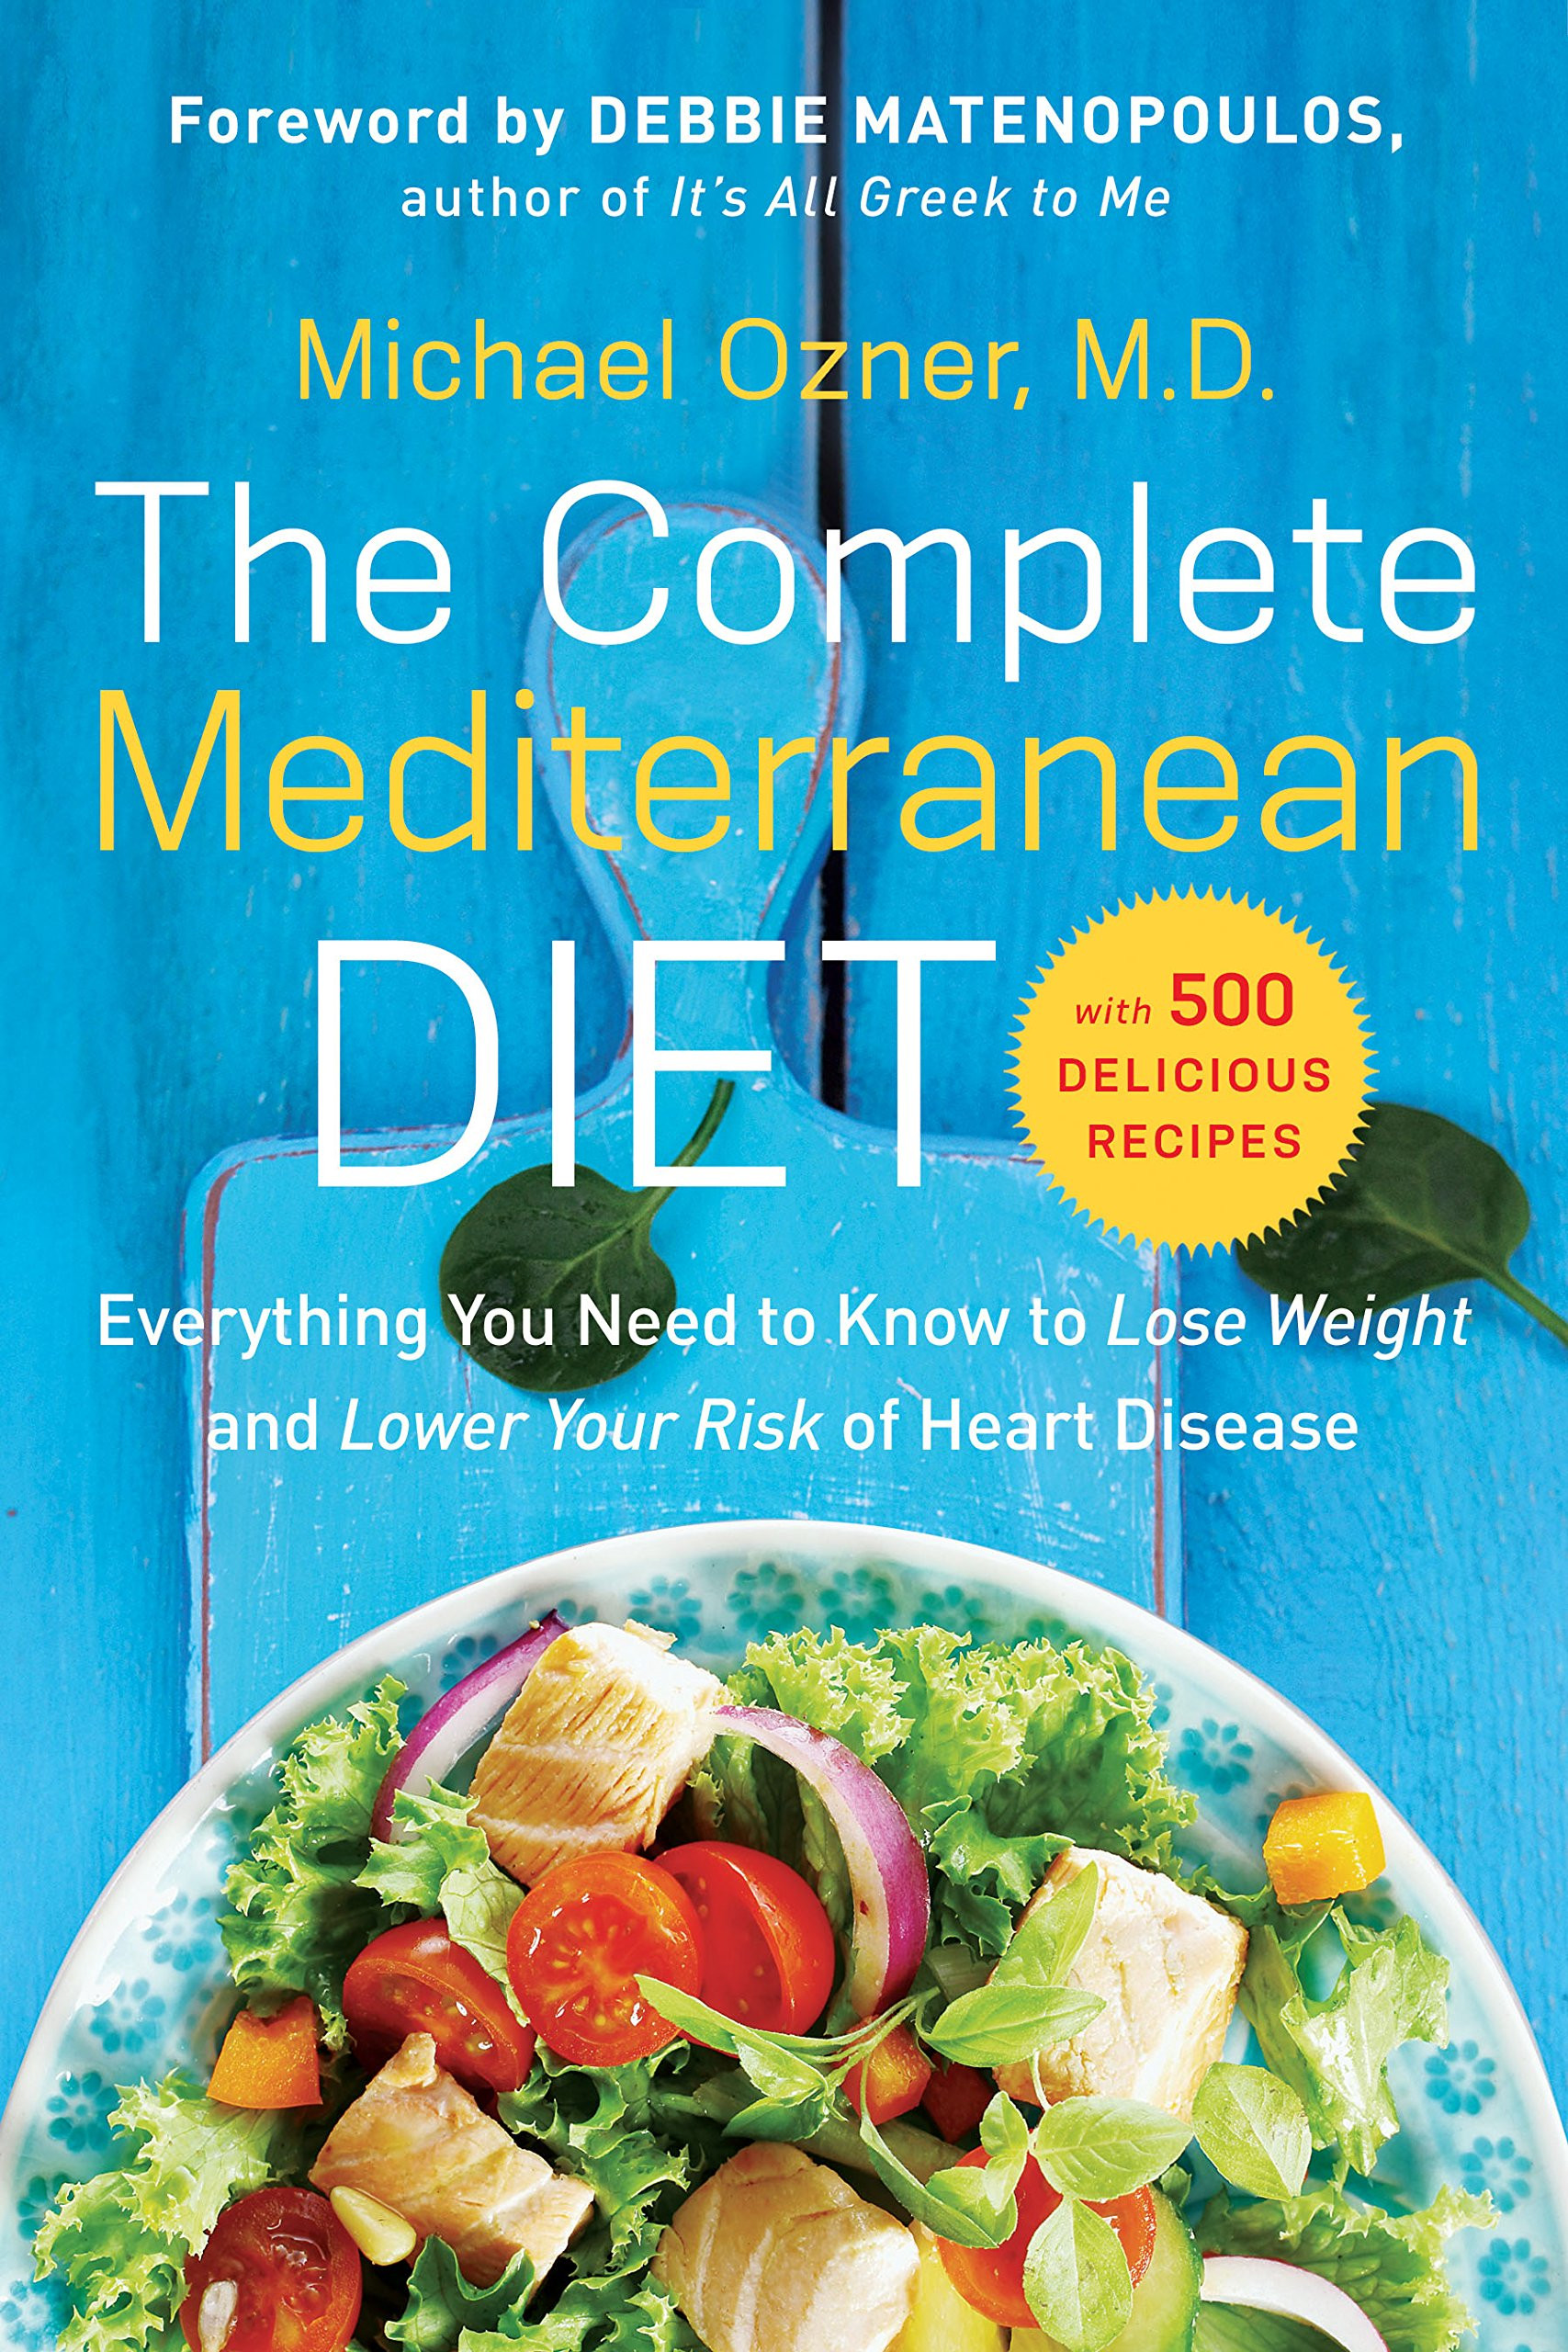 Best Best Mediterranean Diet Book